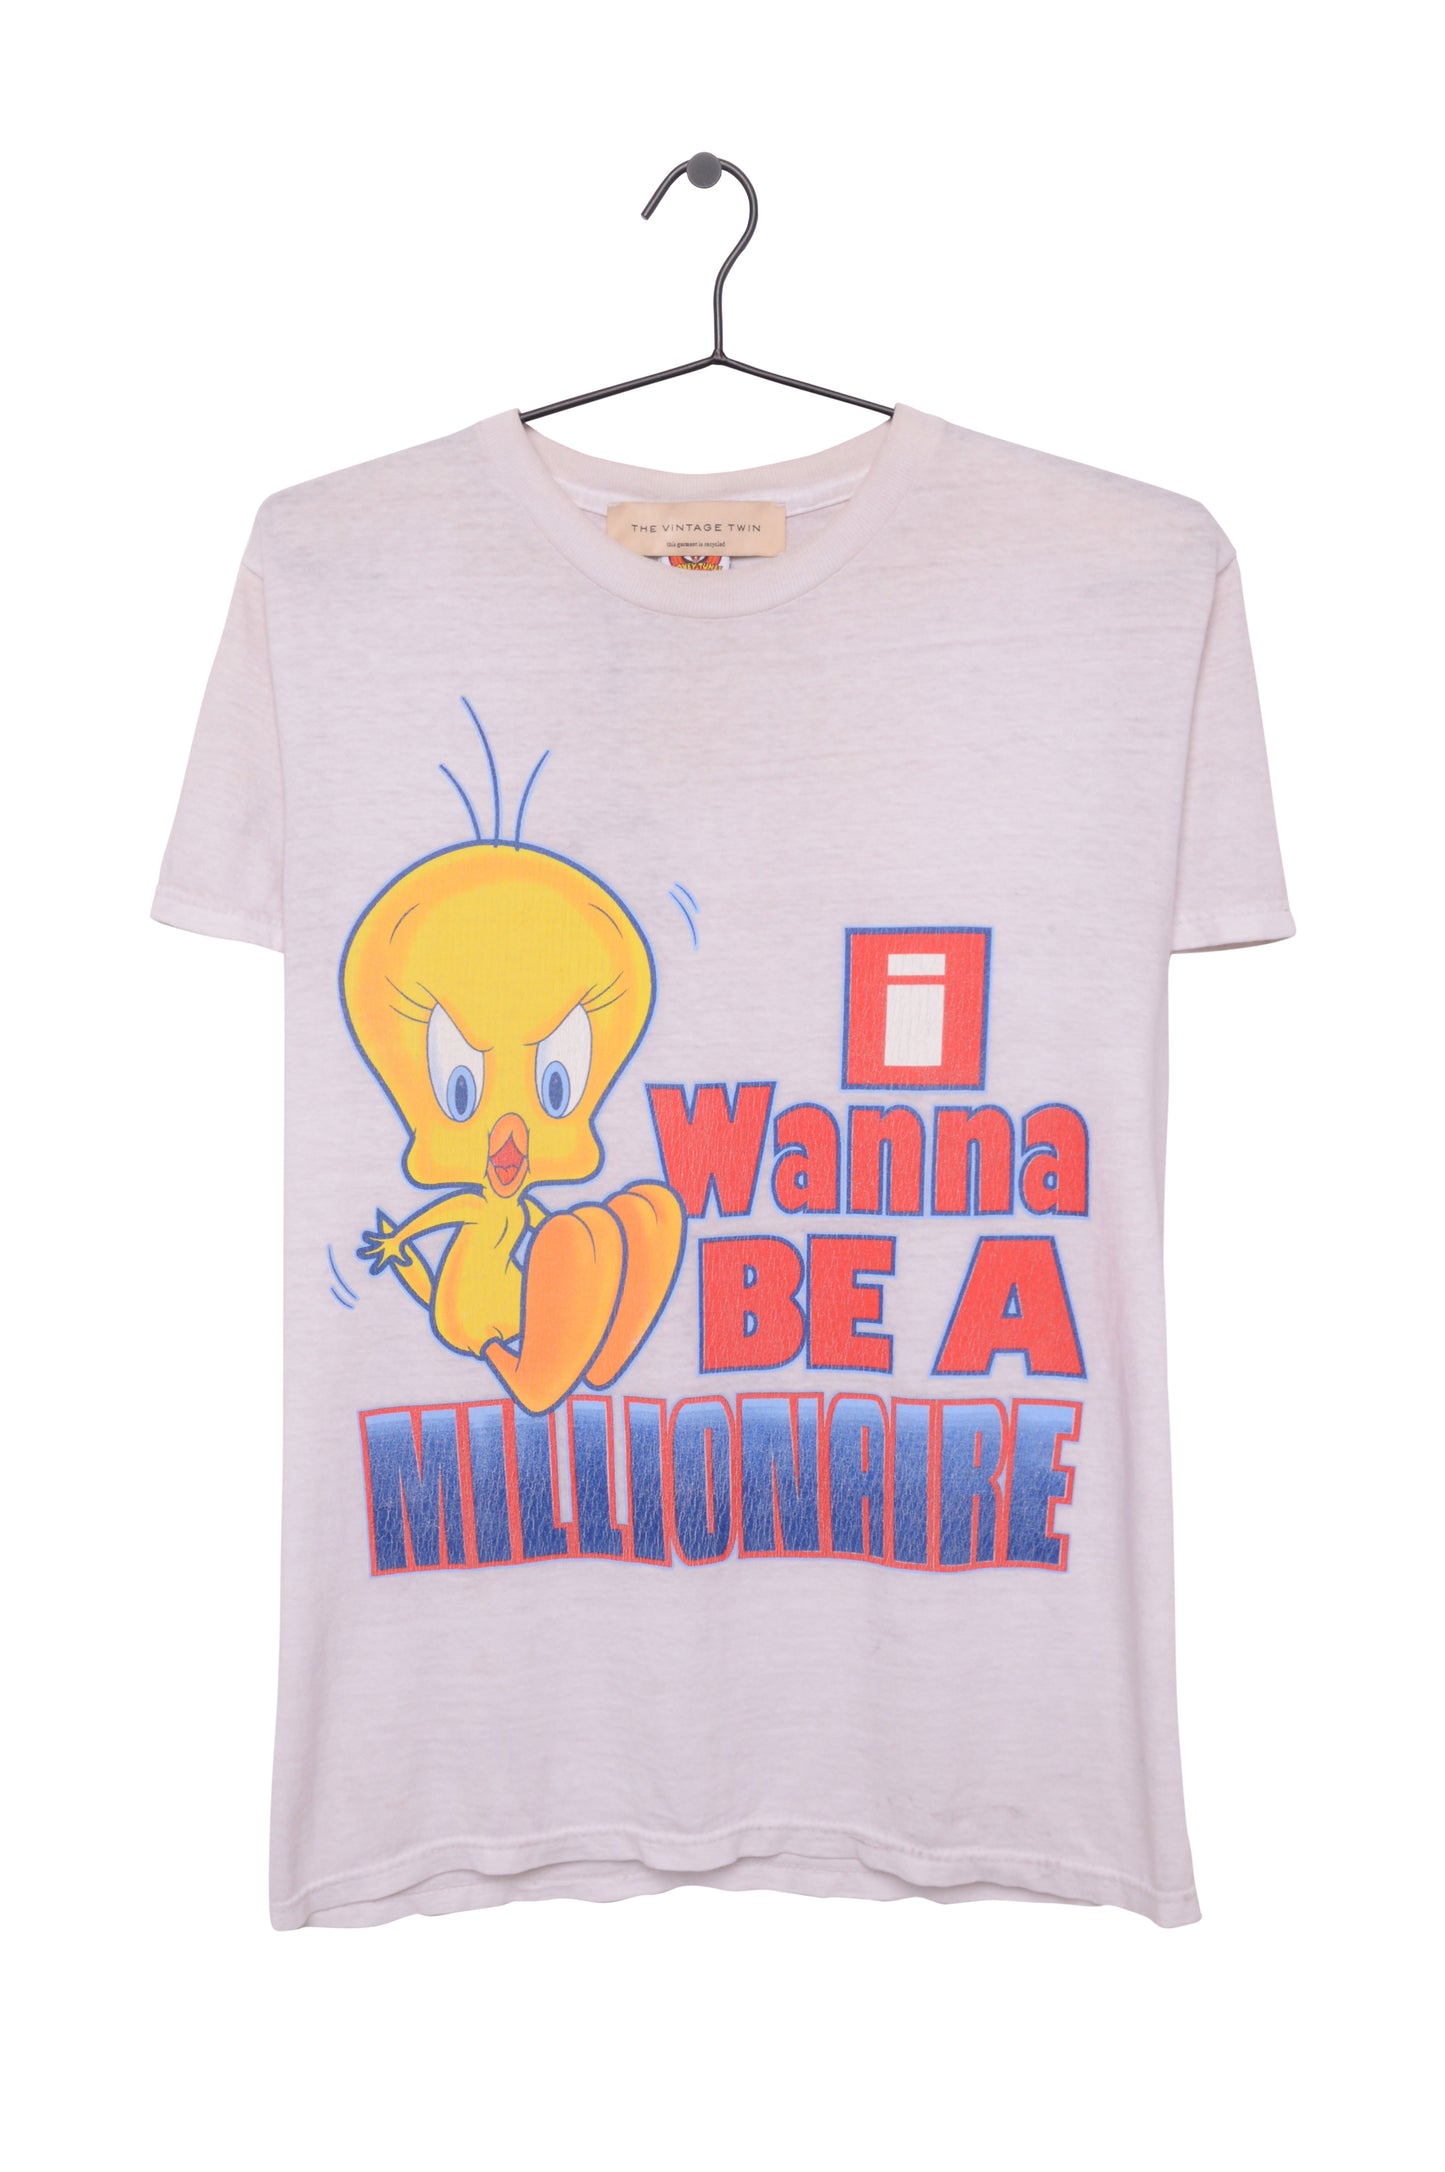 Tweety Bird Millionaire Tee